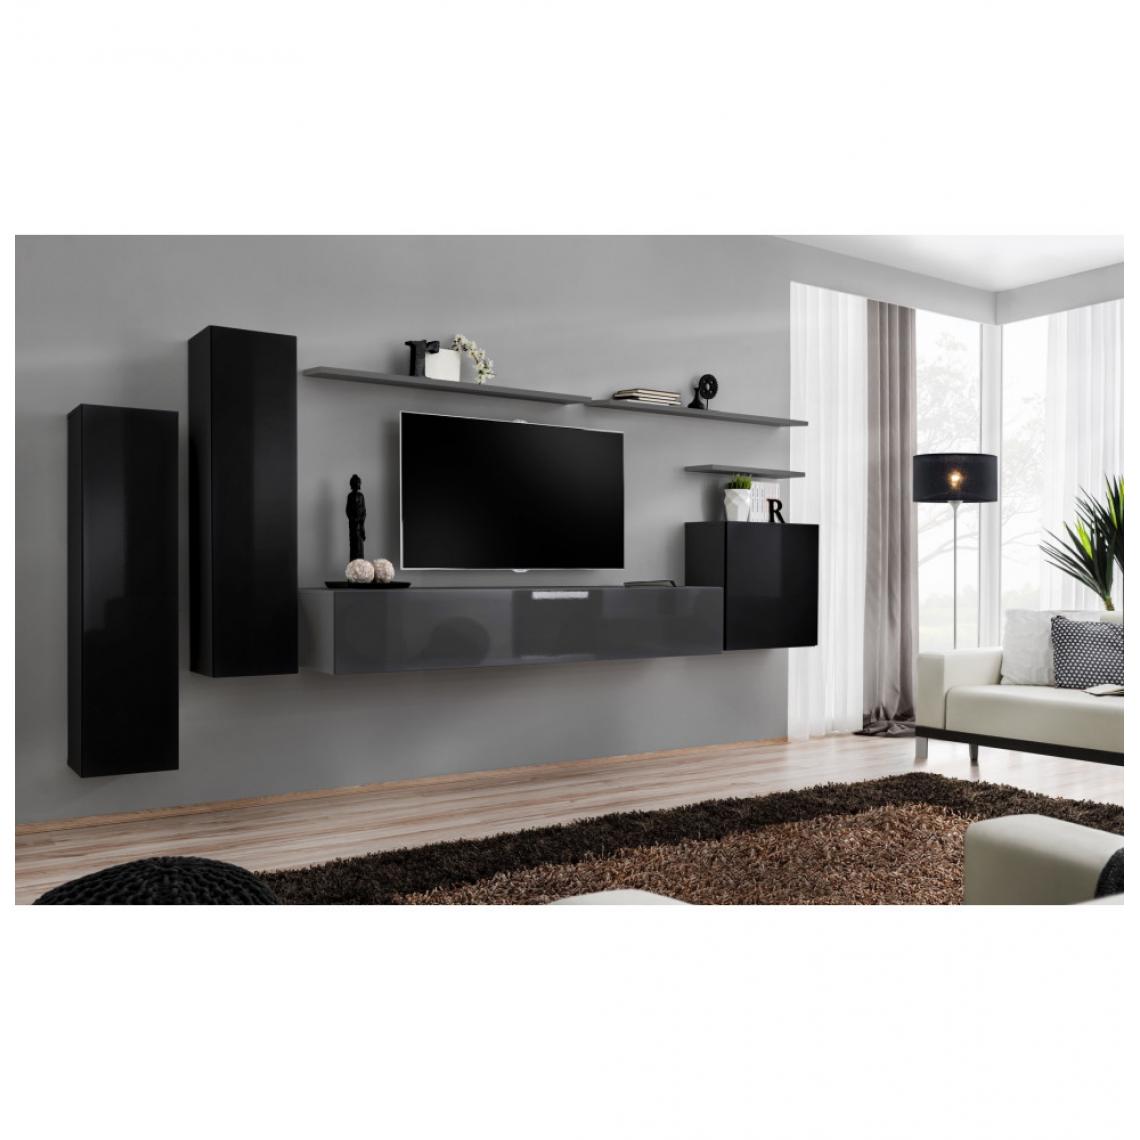 Ac-Deco - Ensemble mural - Switch I - 3 vitrines verticales - 1 banc TV - 3 étagères murales - Noir et graphite - Modèle 2 - Meubles TV, Hi-Fi